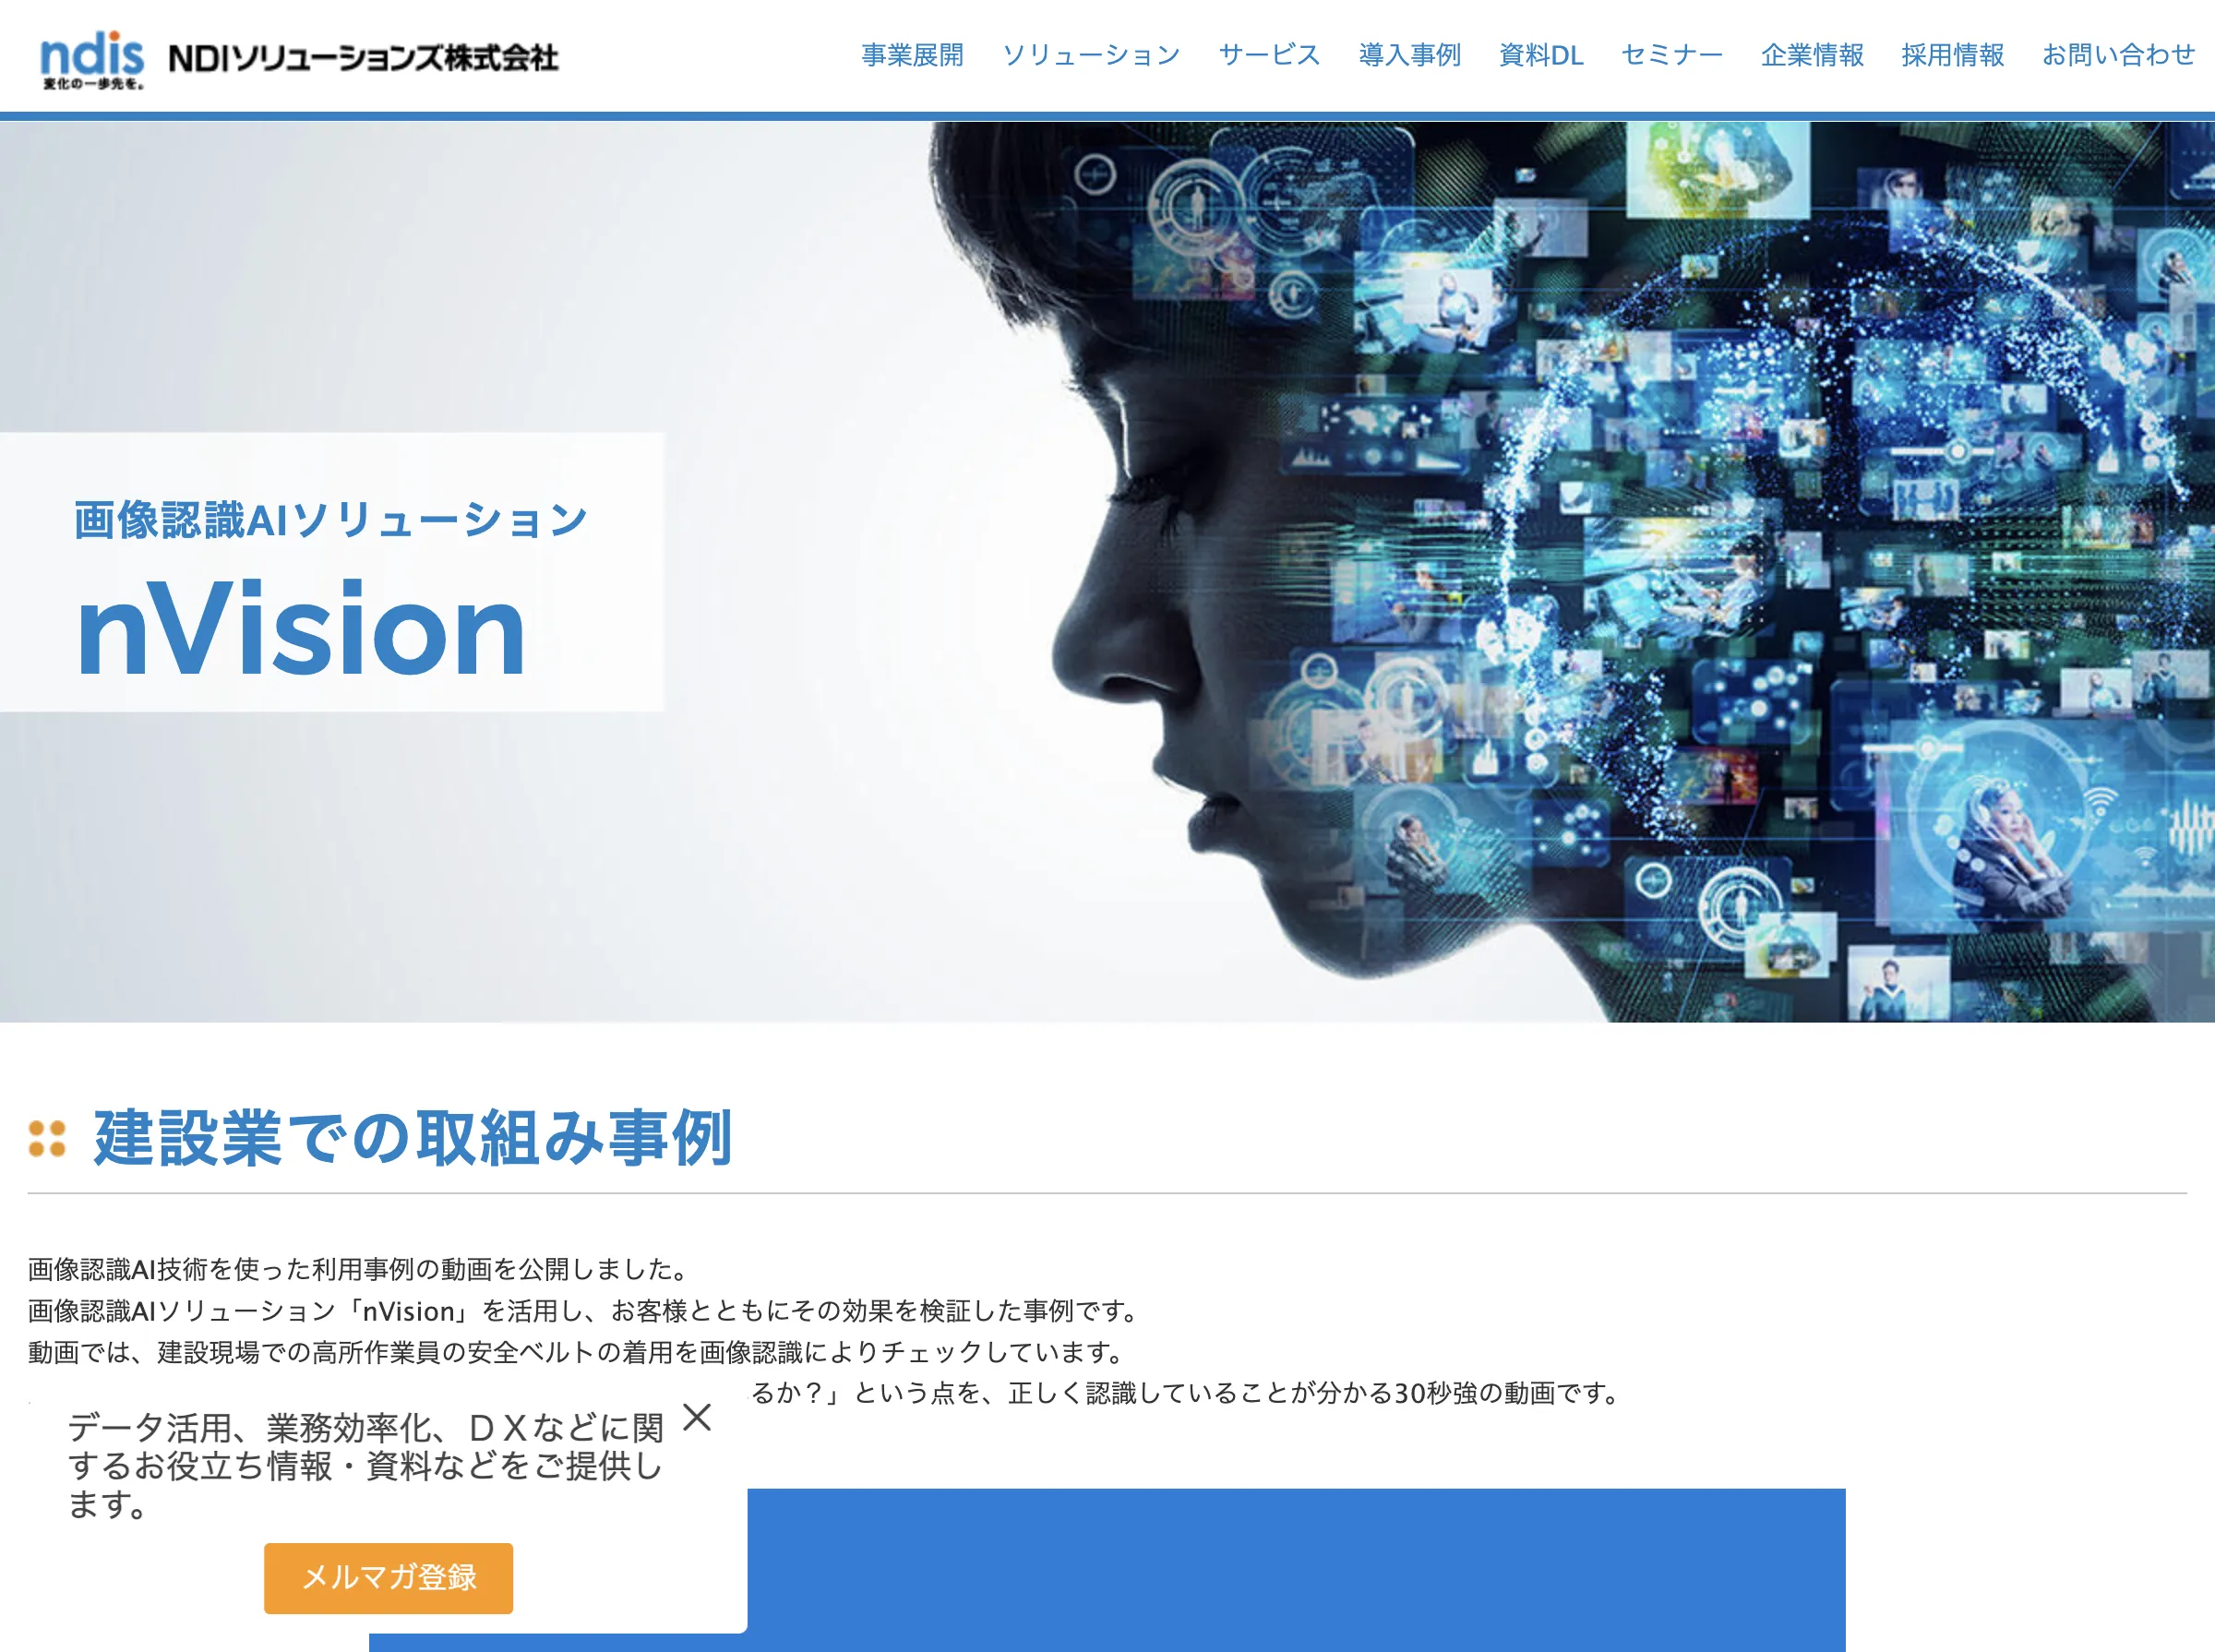 nVision(NDIソリューションズ株式会社)